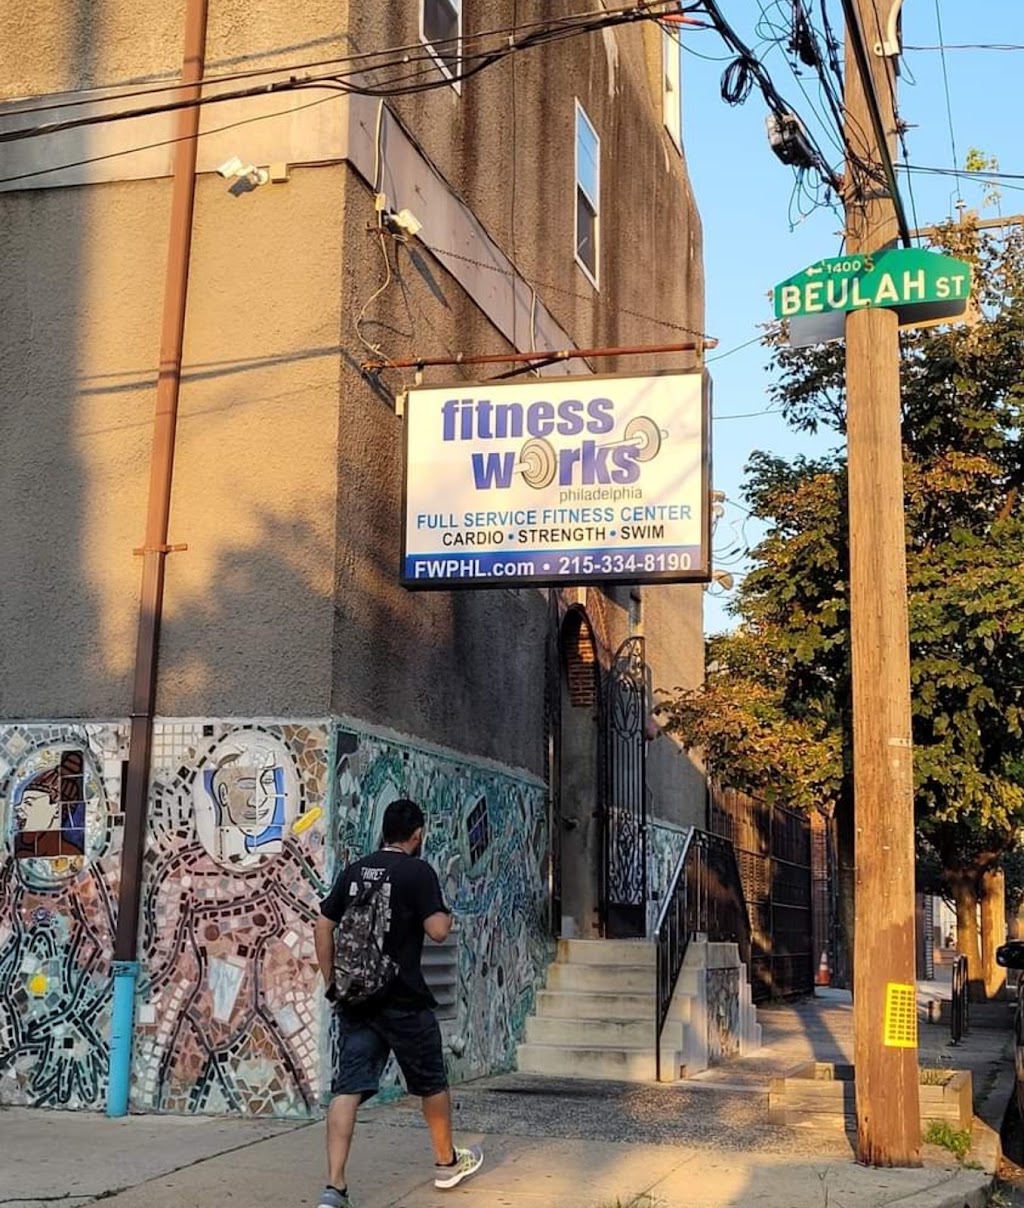 Fitness Works Philadelphia | 714 Reed St, Philadelphia, PA 19147 | Phone: (215) 334-8190